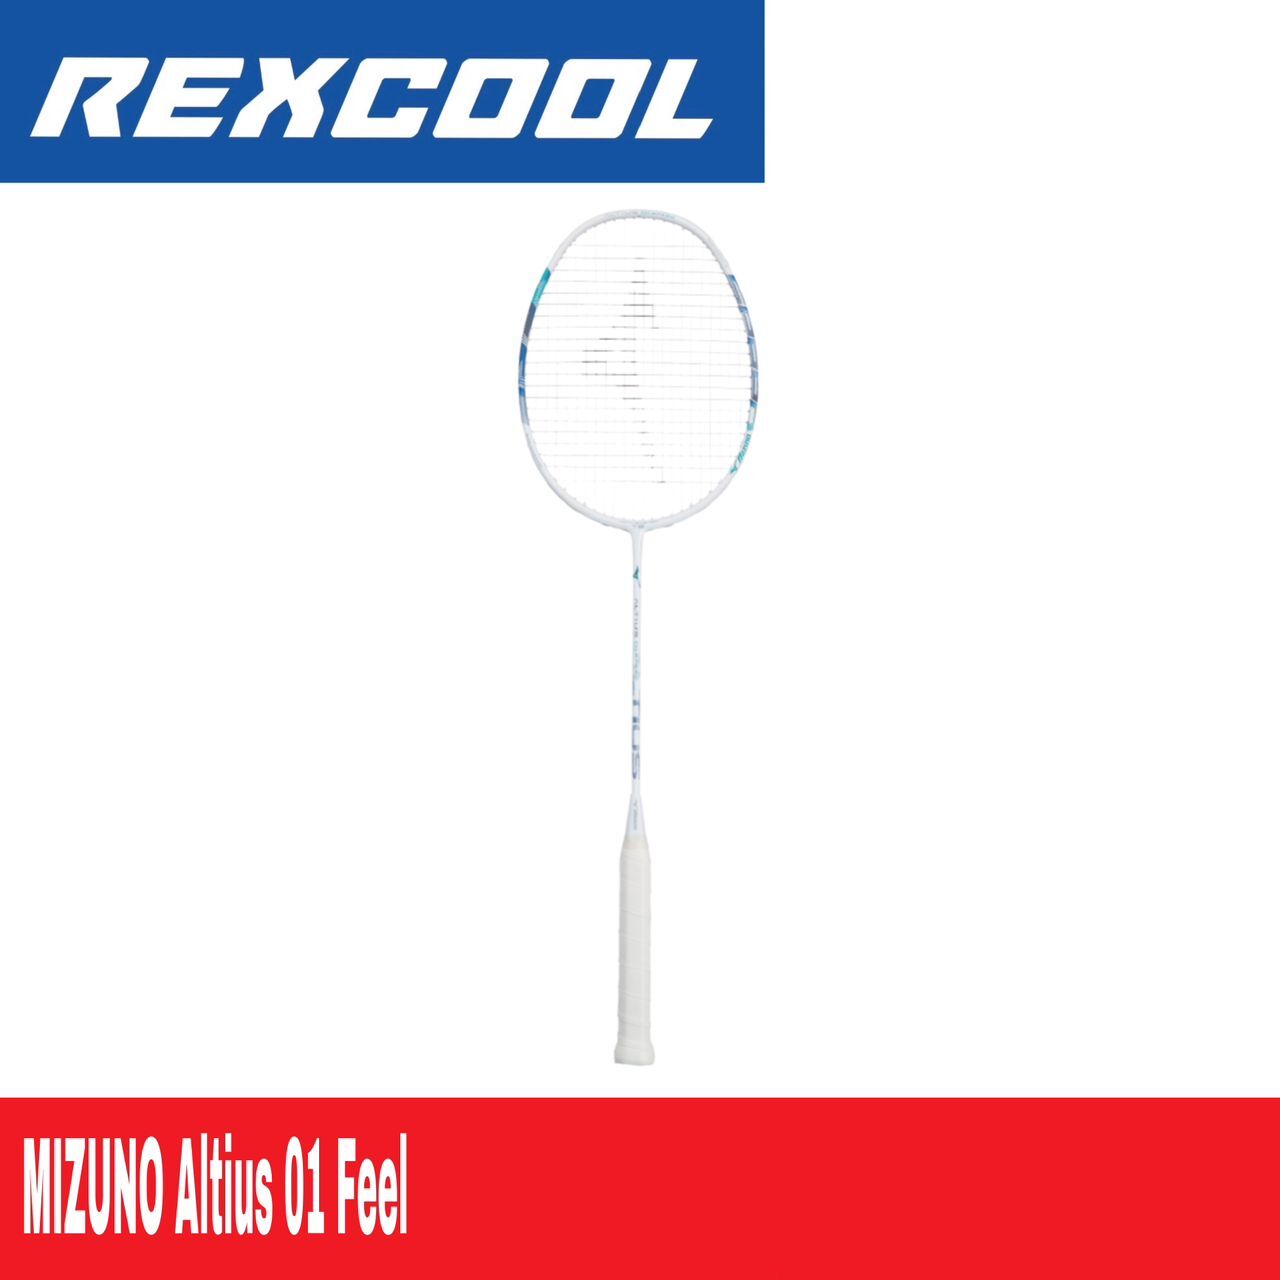 MIZUNO Altius 01 Feel Badminton Racket – Rexcool Sports